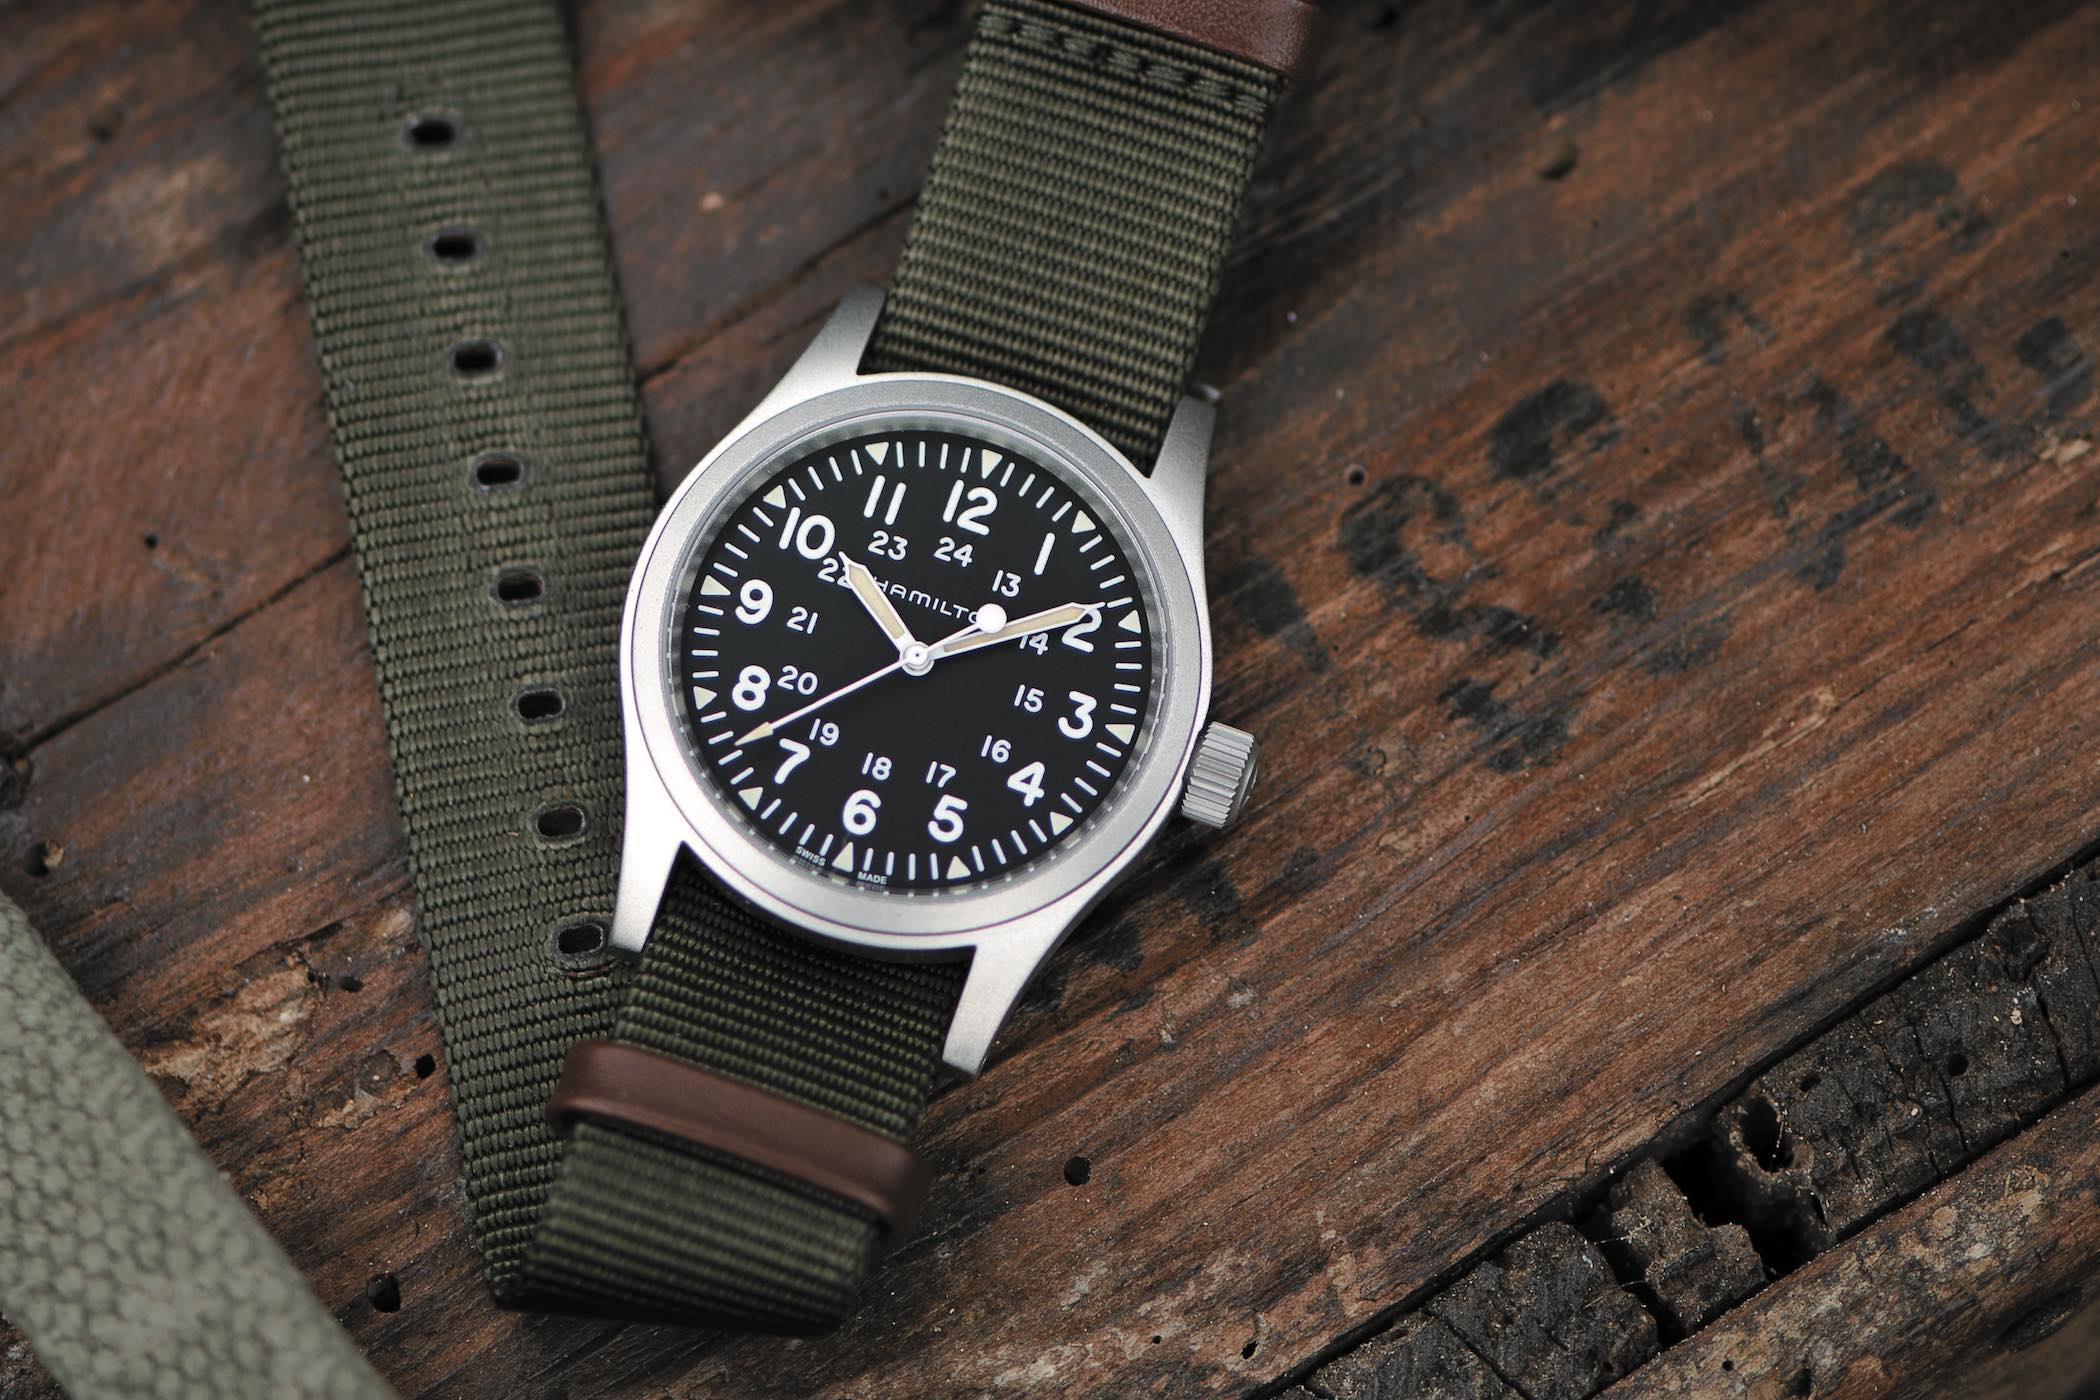 Идеальные часы на каждый день: Seiko 5 "Field Watch" SRPG27, менее чем за 300$